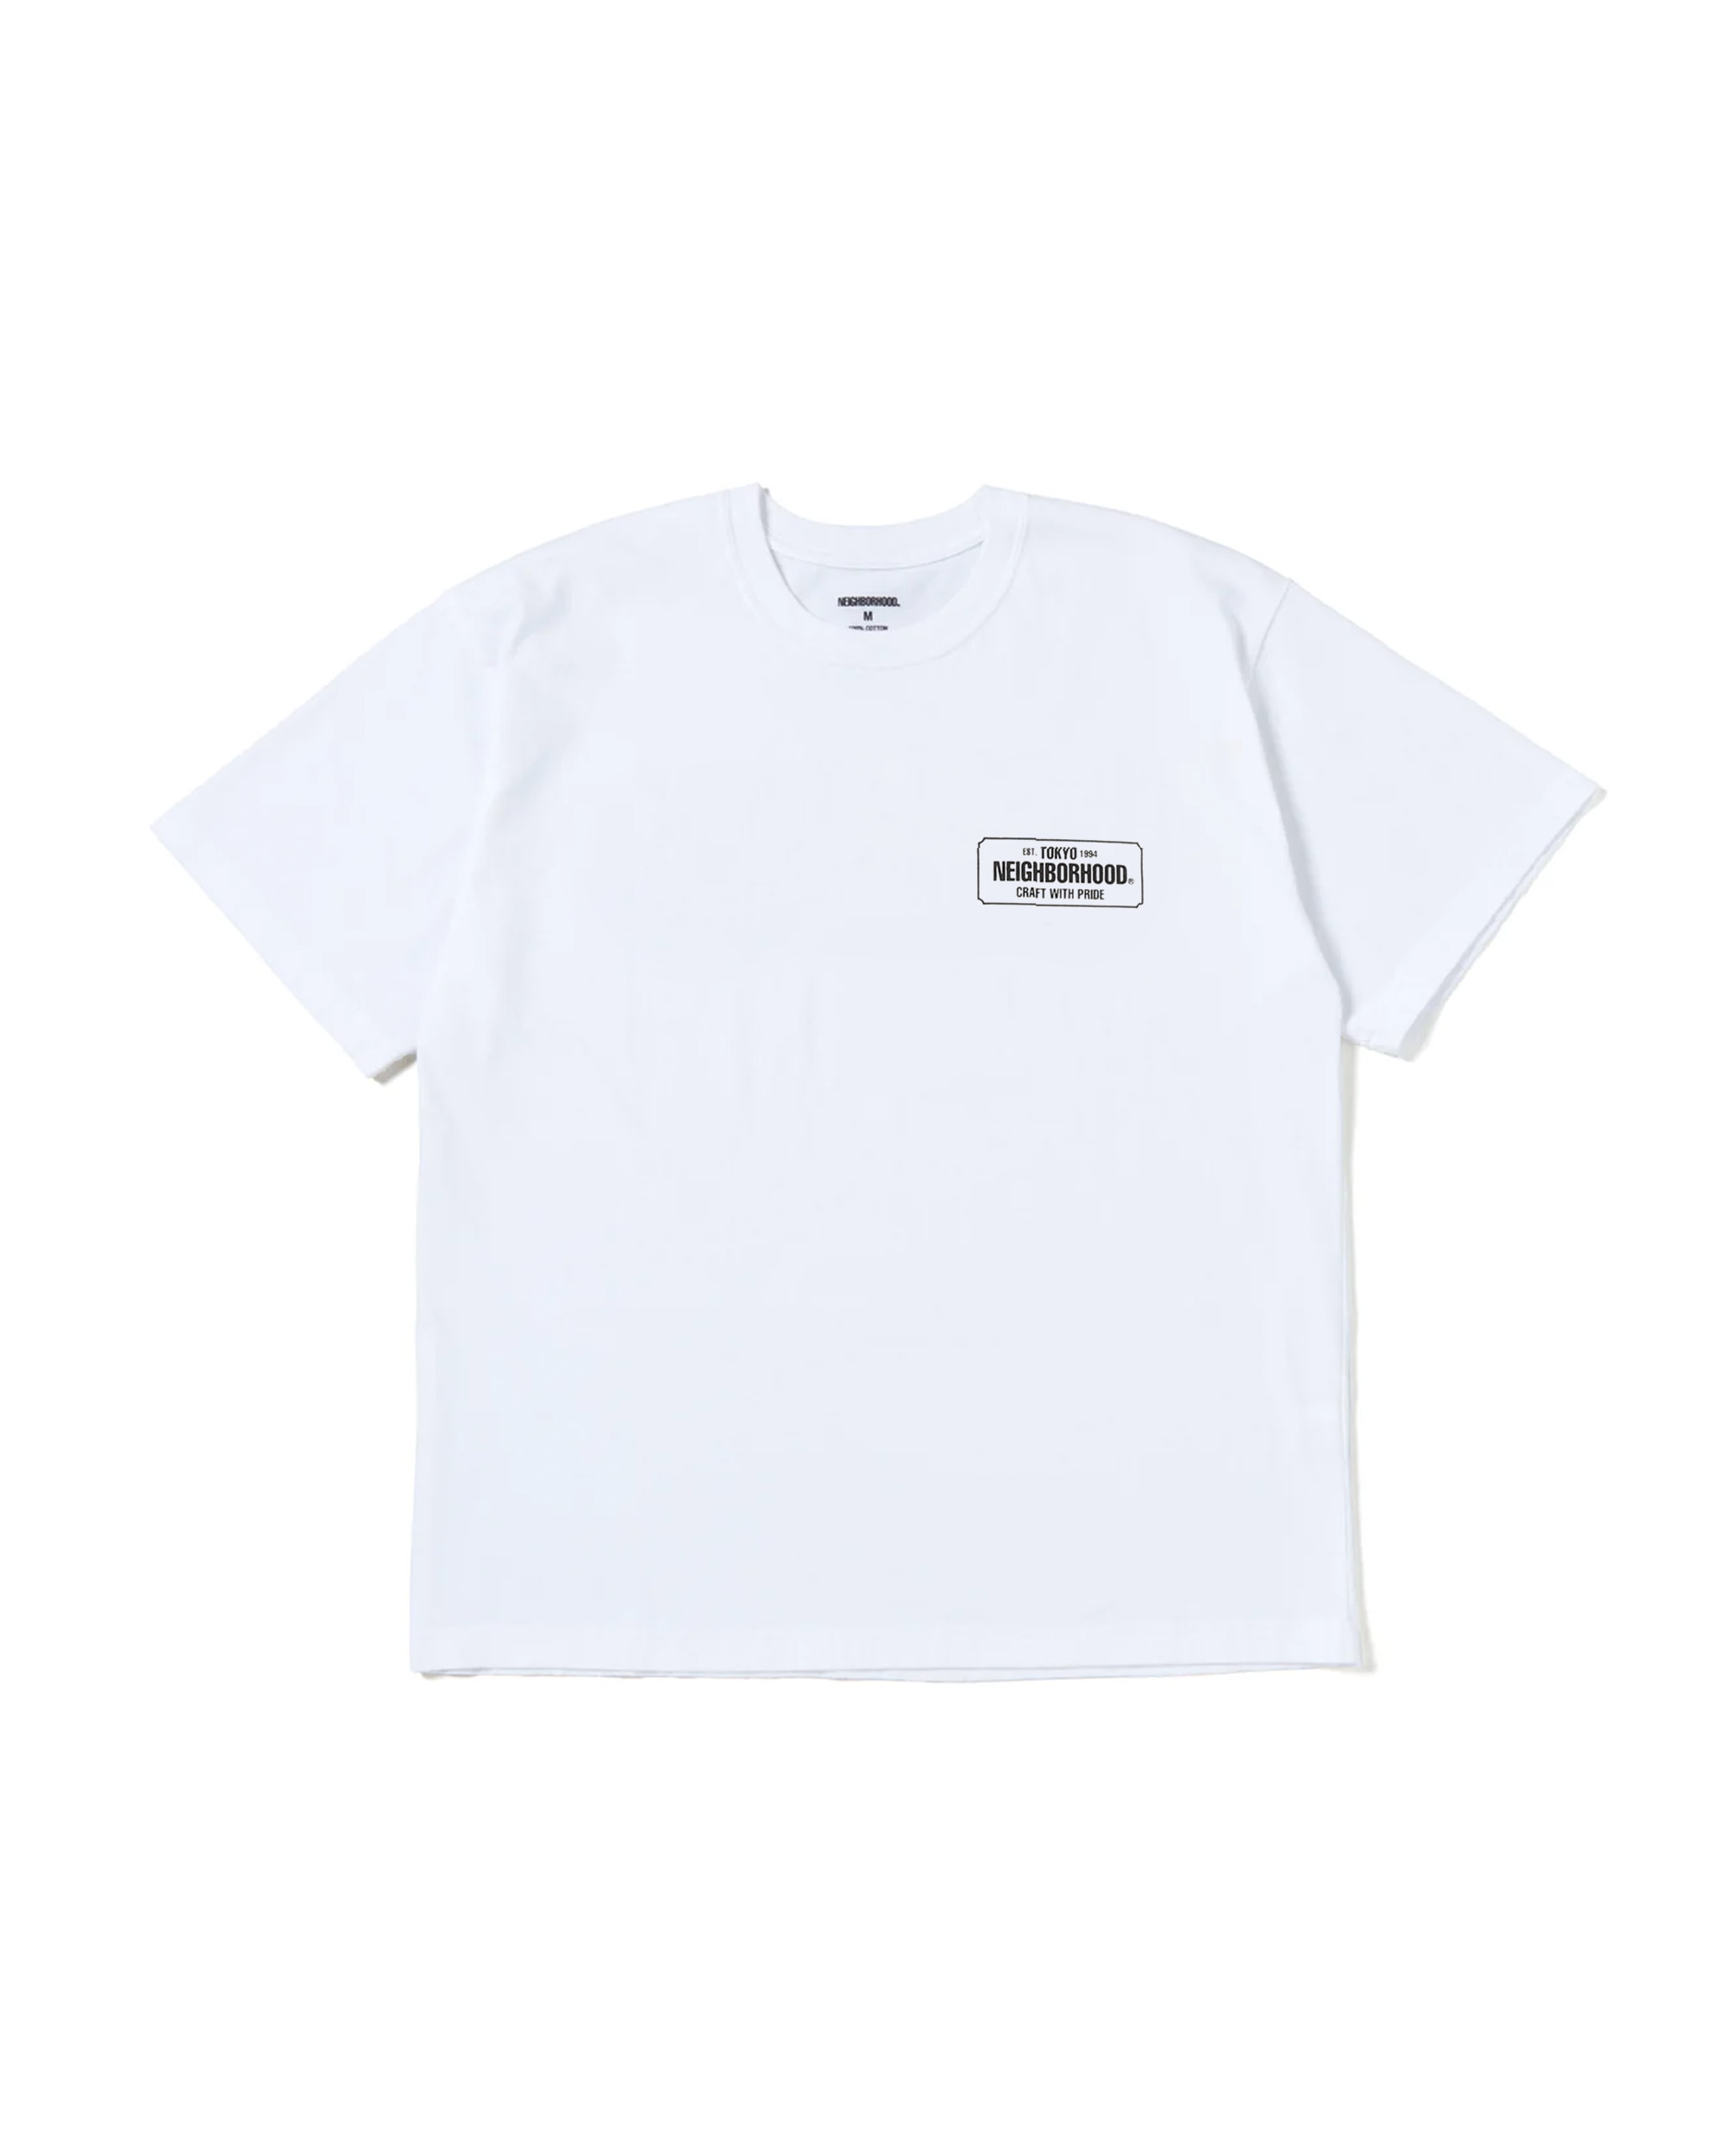 NH SS-1 T-Shirt - White